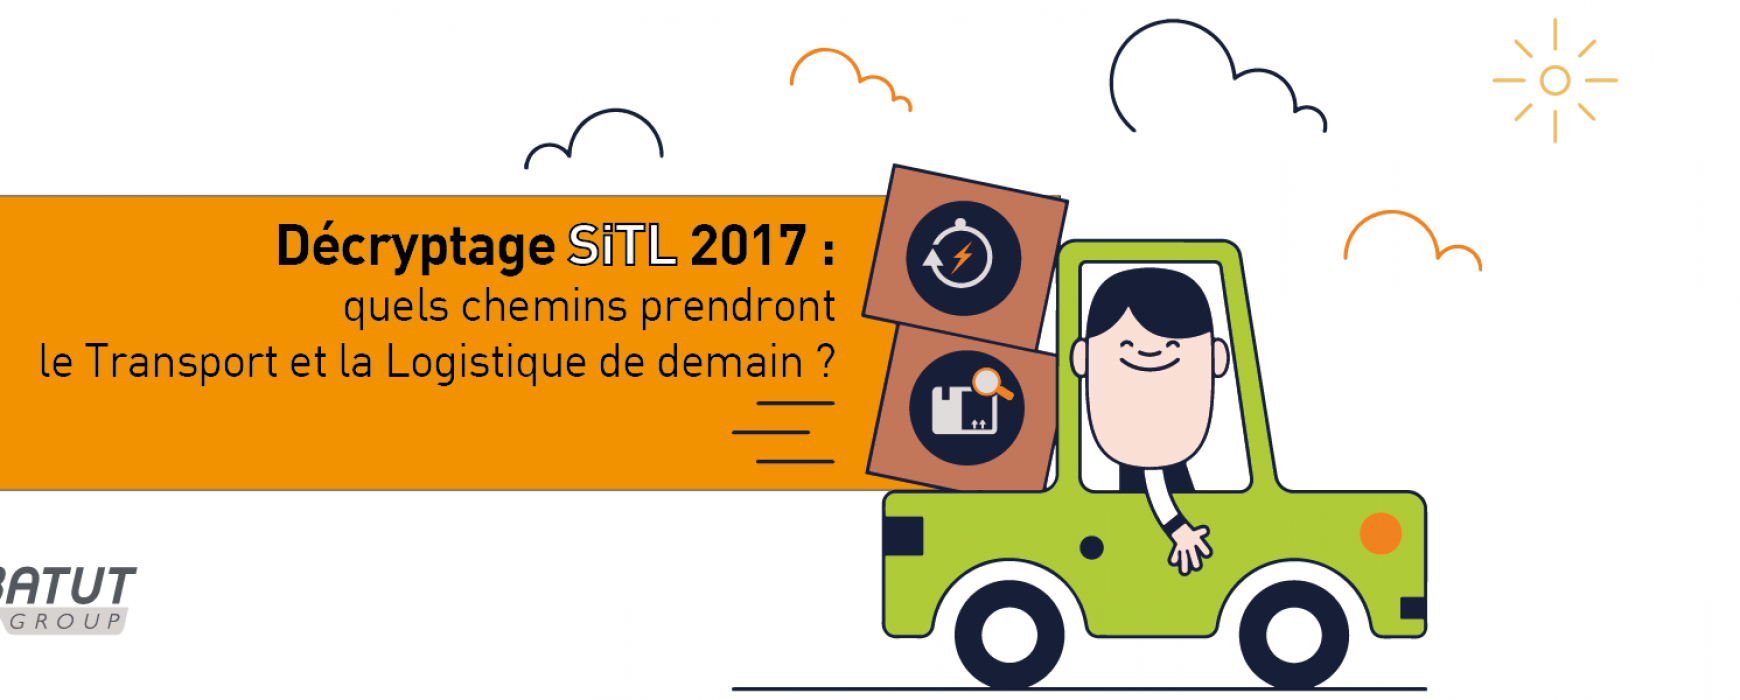 Décryptage SITL 2017 : quels chemins prendront le Transport et le Logistique de demain?